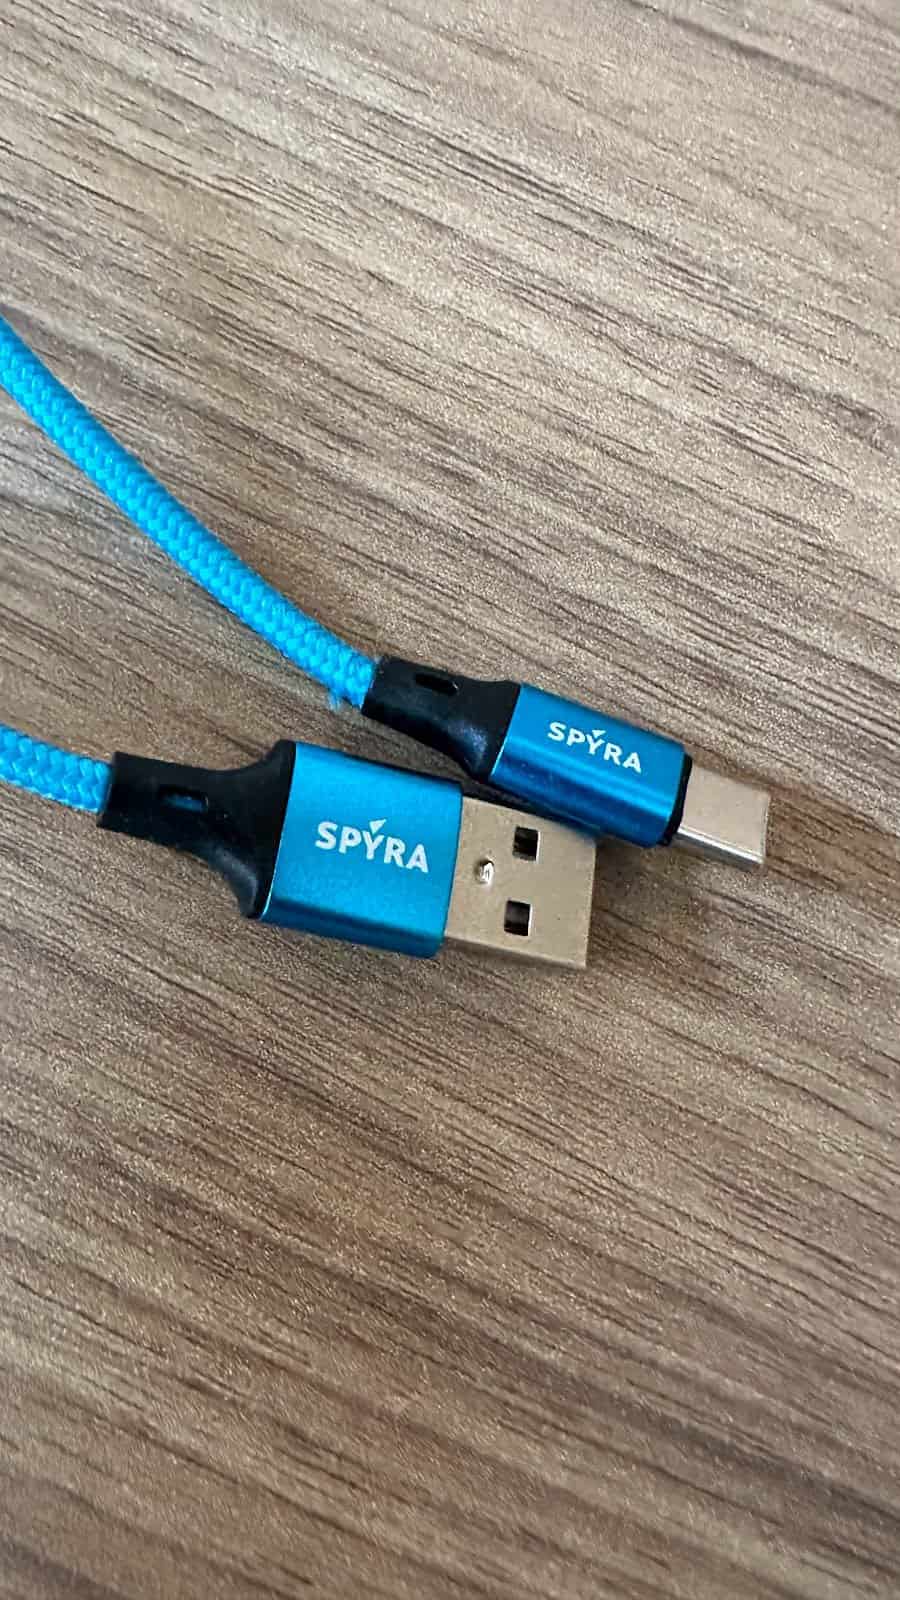 SpyraThree : un petit câble USB aux couleurs de la marque, le détail que j'aime bien